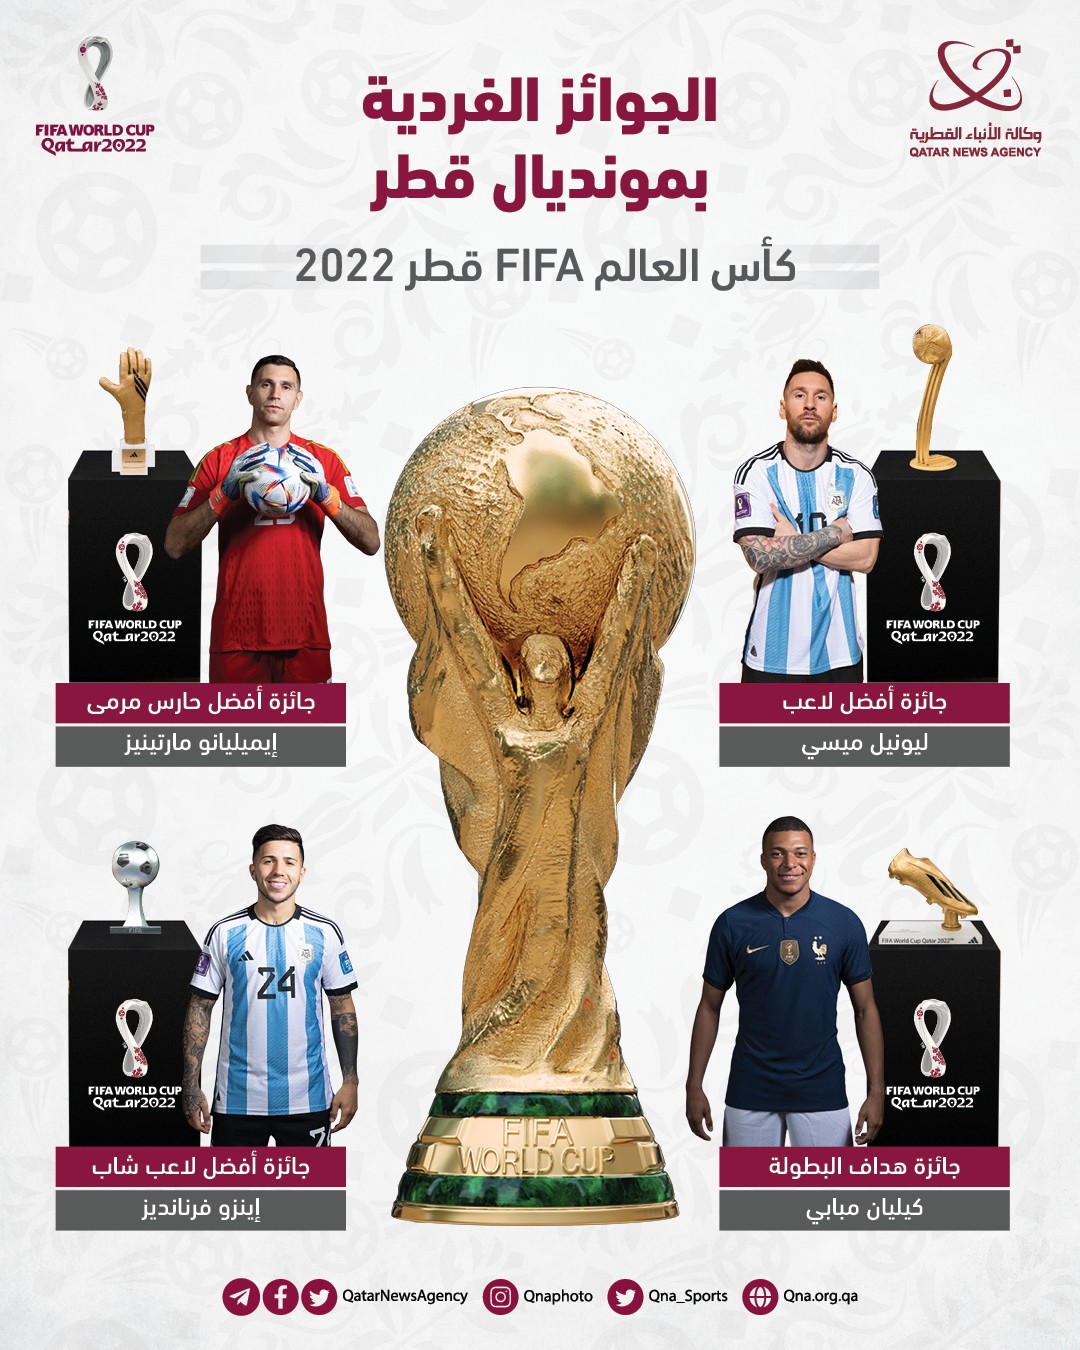 الجوائز الفردية بين الأفضل والهداف في كأس العالم FIFA قطر 2022.jpg